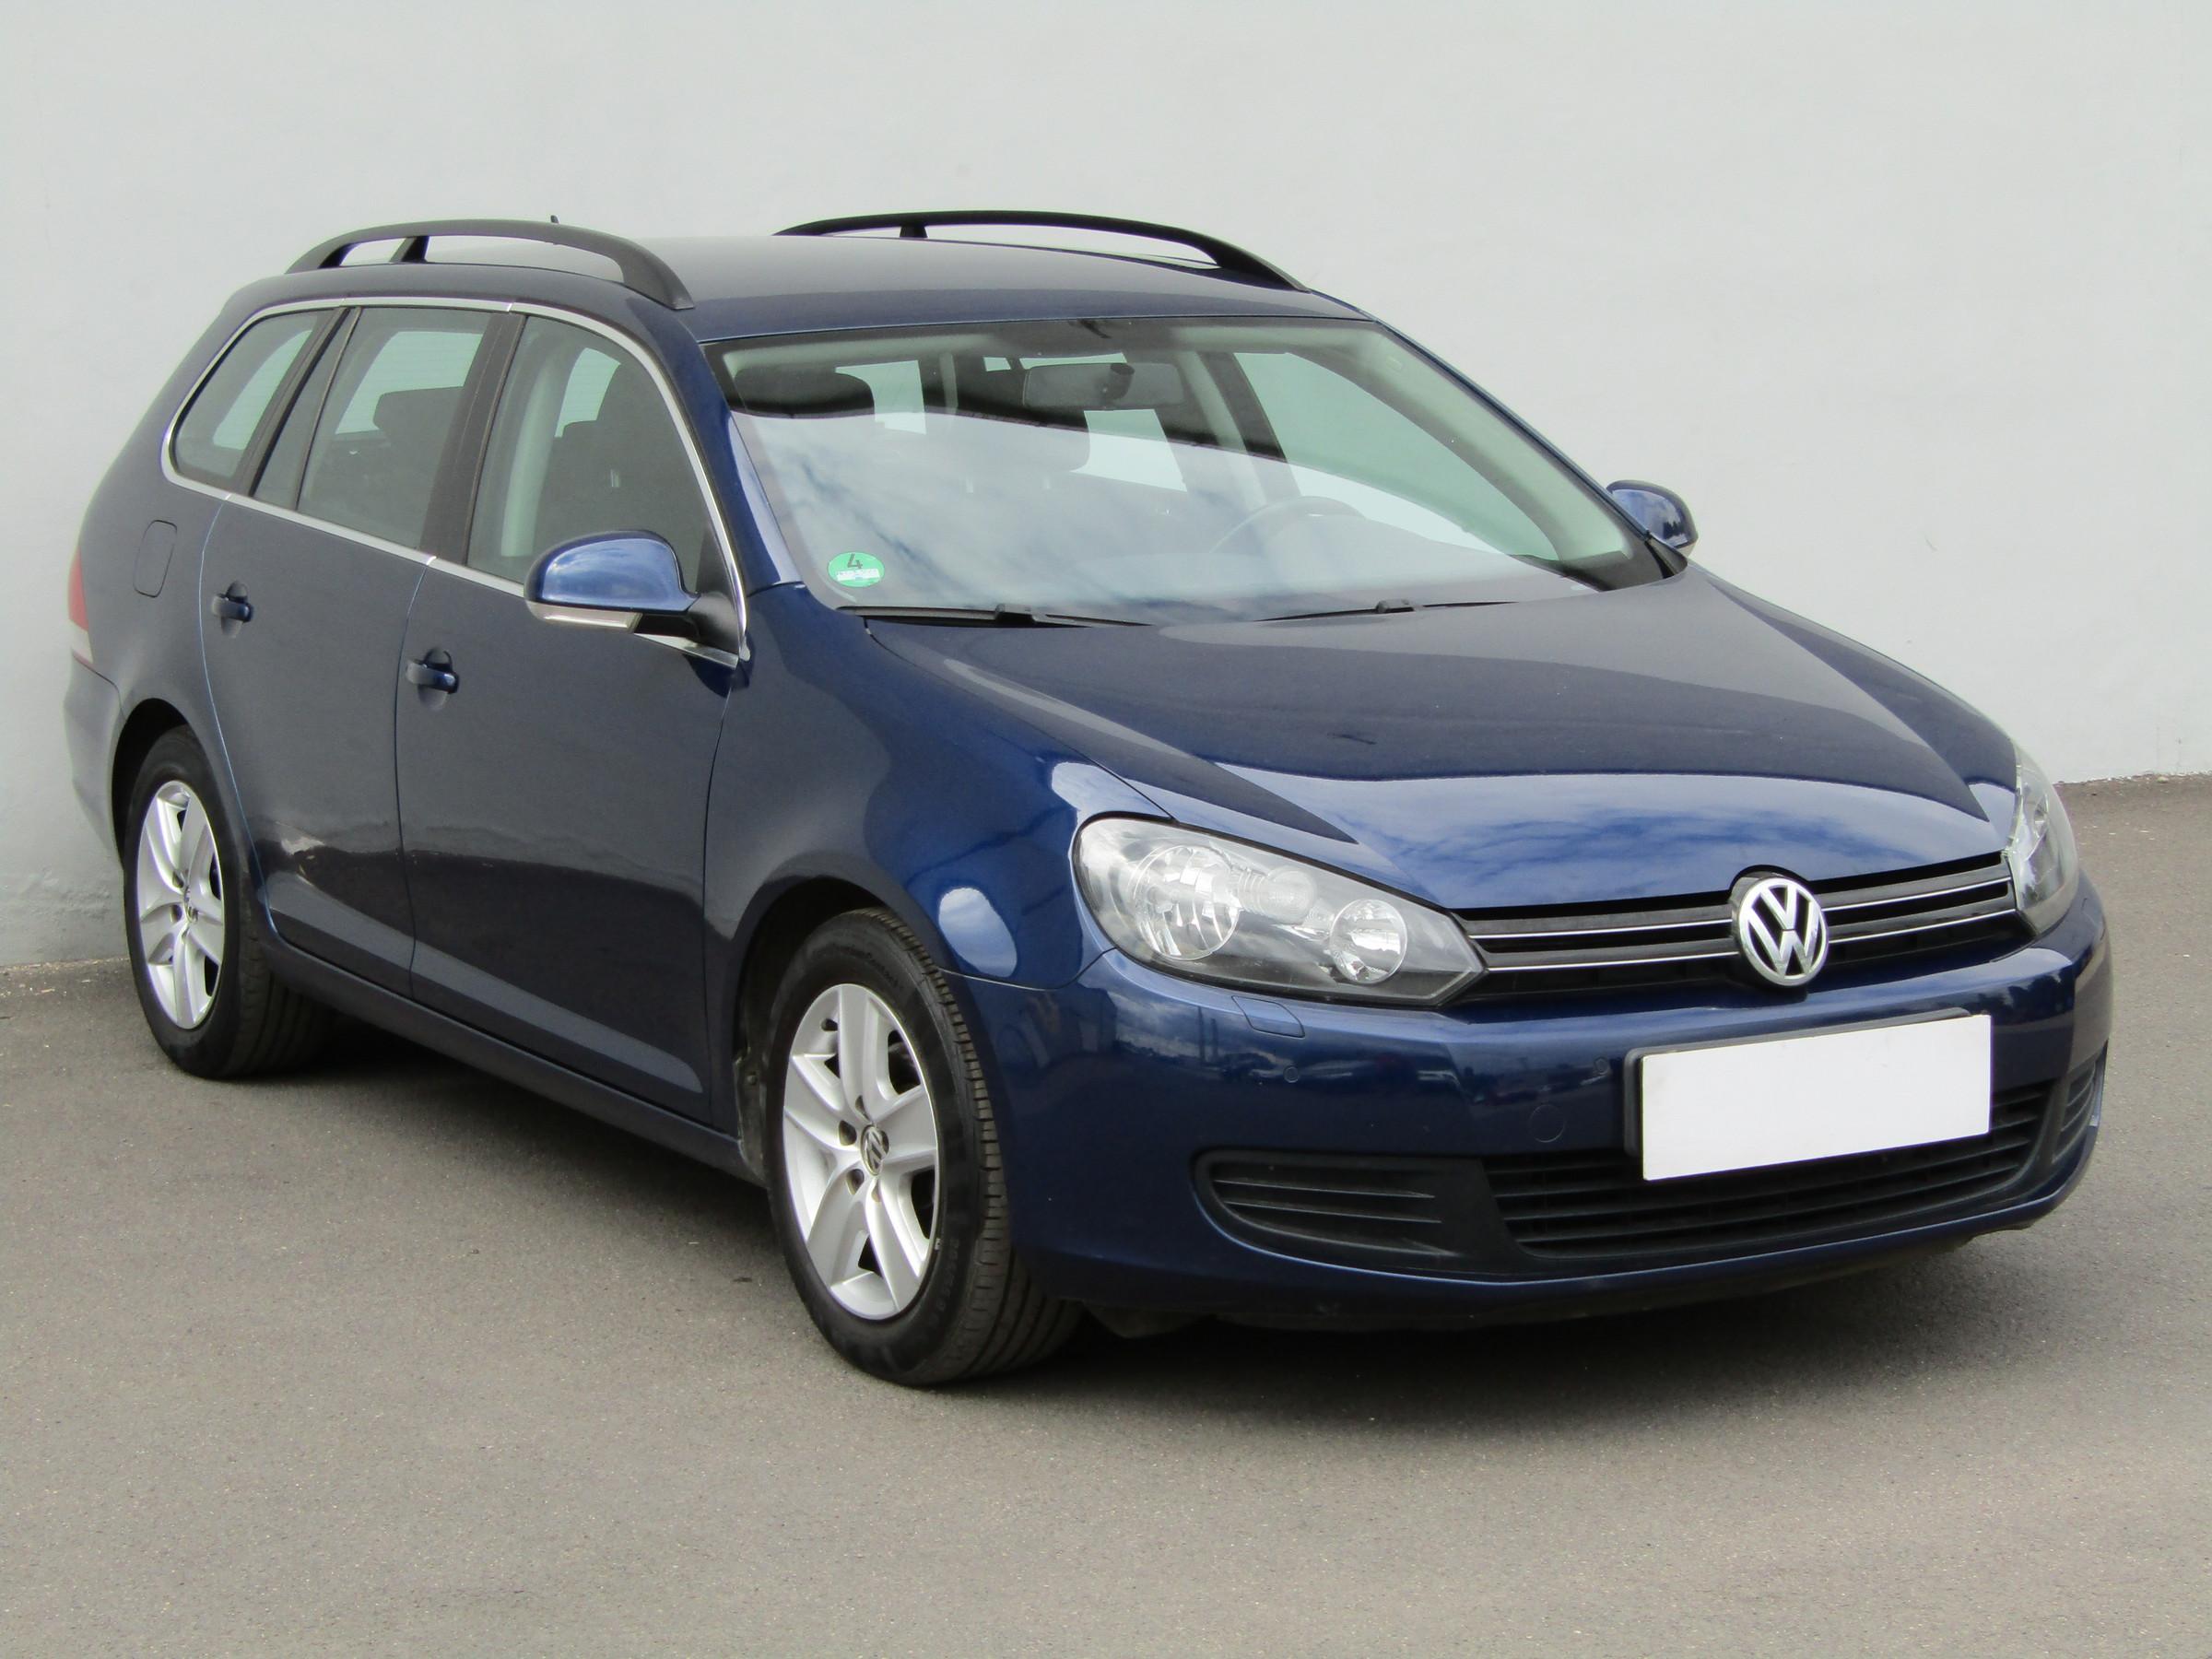 Volkswagen Golf, 2010 - celkový pohled